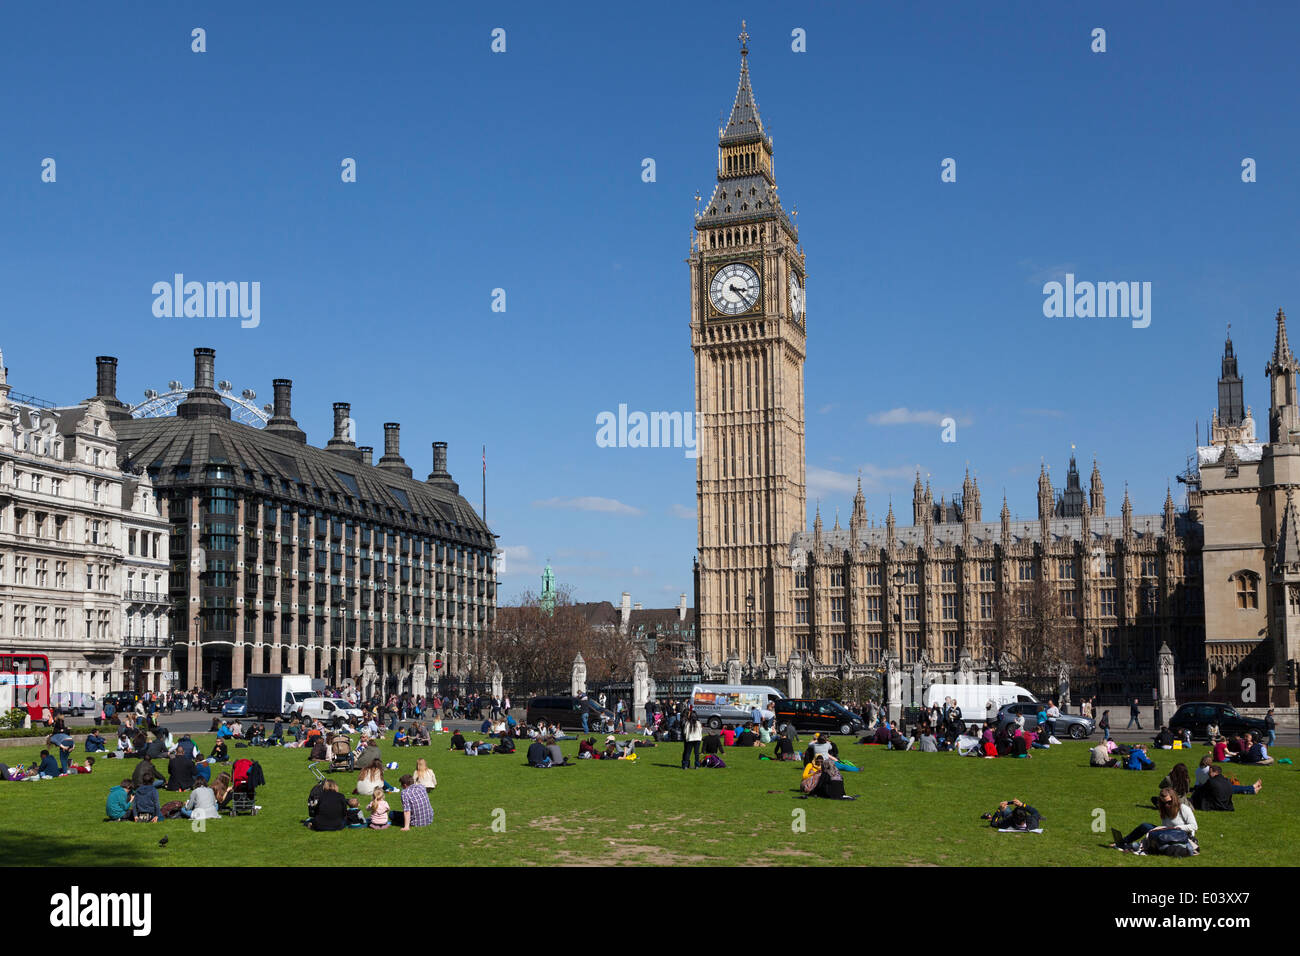 Los turistas sentados en el césped de la Plaza del Parlamento con el Big Ben y las Casas del Parlamento de Londres. Foto de stock